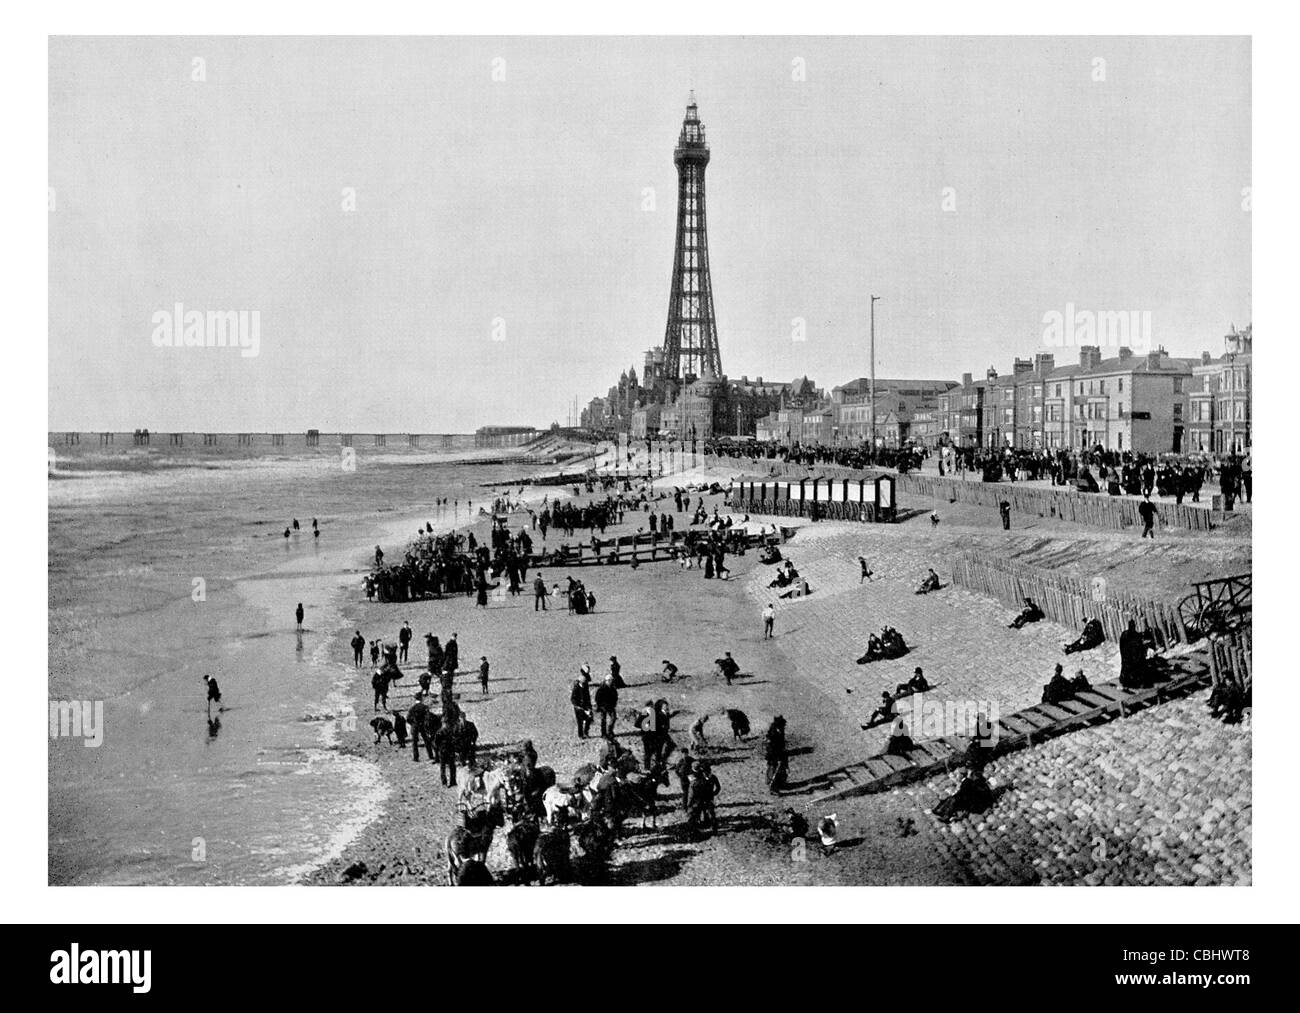 La tour de Blackpool Lancashire England Fédération mondiale des Grandes Tours 1 e année bâtiment classé, Promenade esplanade pier seaside resort Banque D'Images